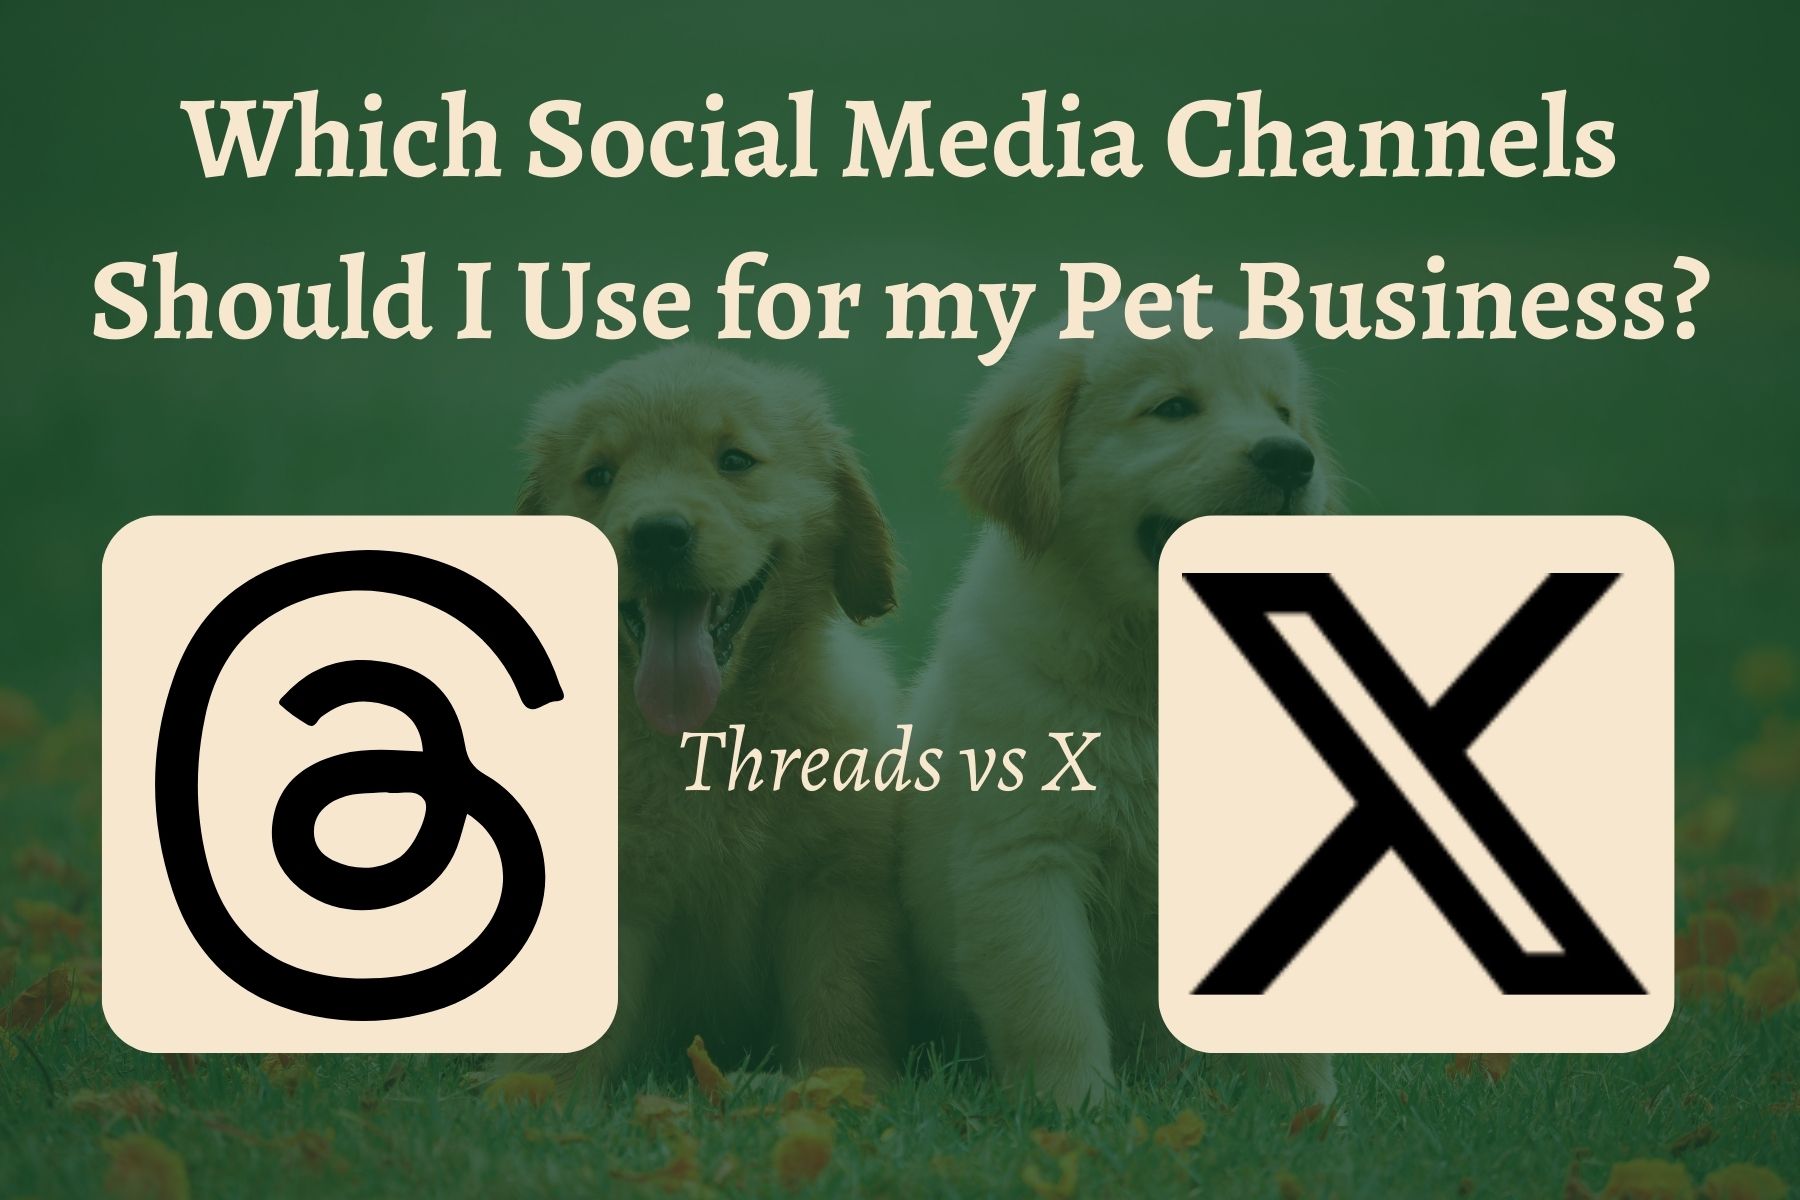 Threads vs X: Choosing Social Media for Pet Businesses